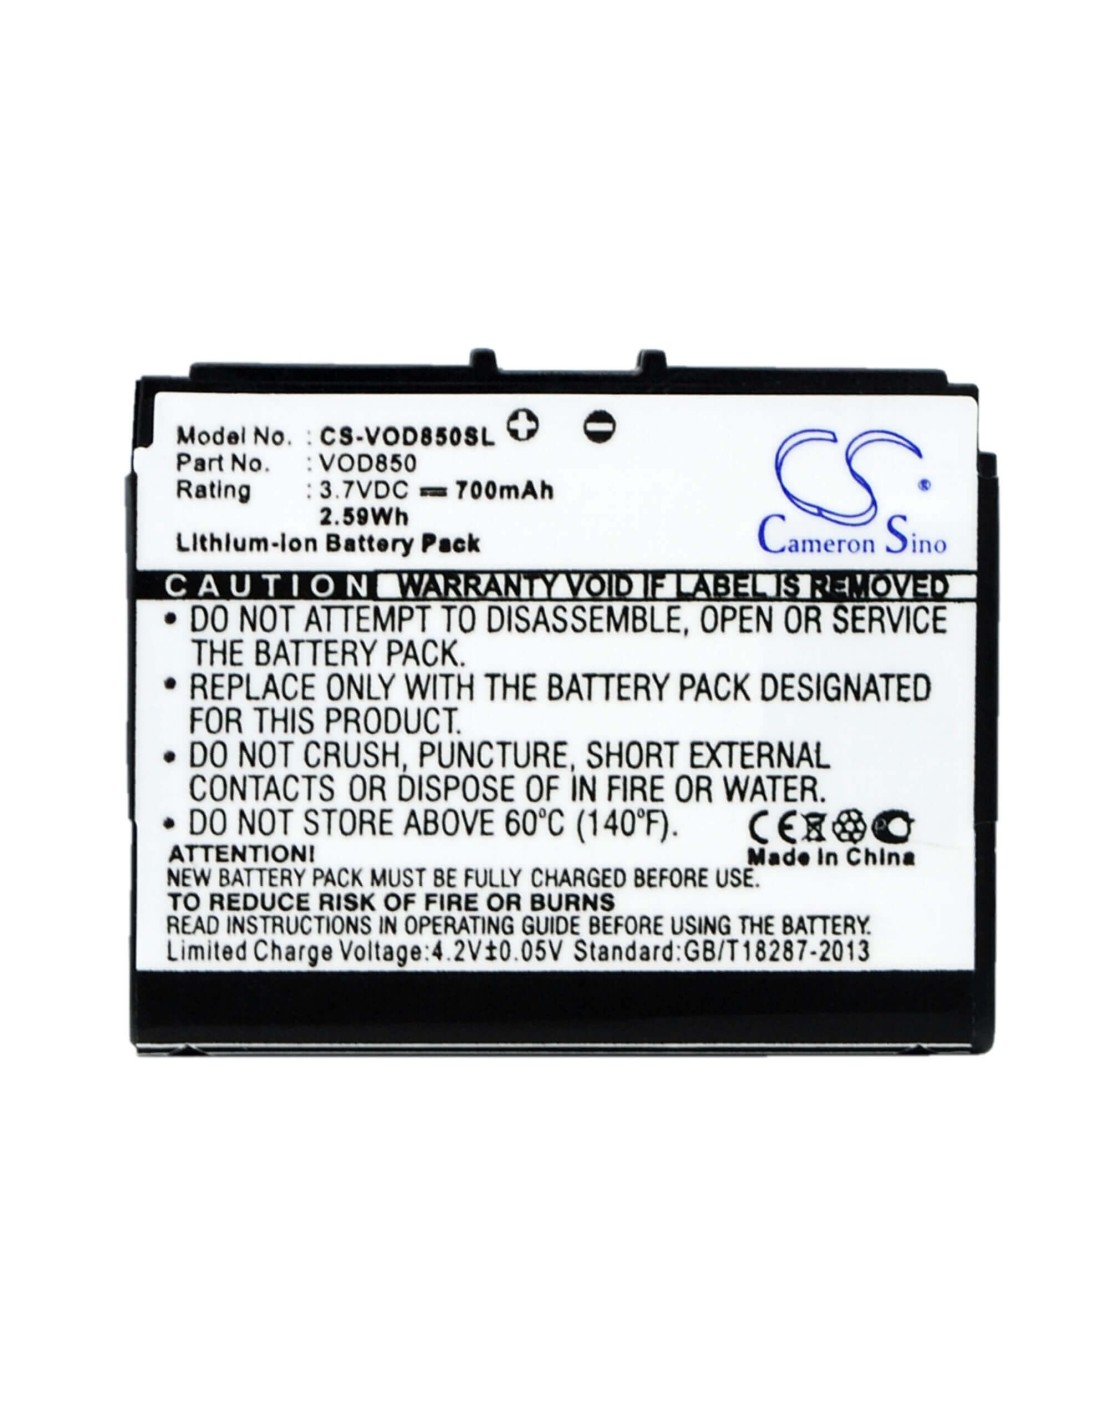 Battery for Vodafone 850, VF850 3.7V, 700mAh - 2.59Wh